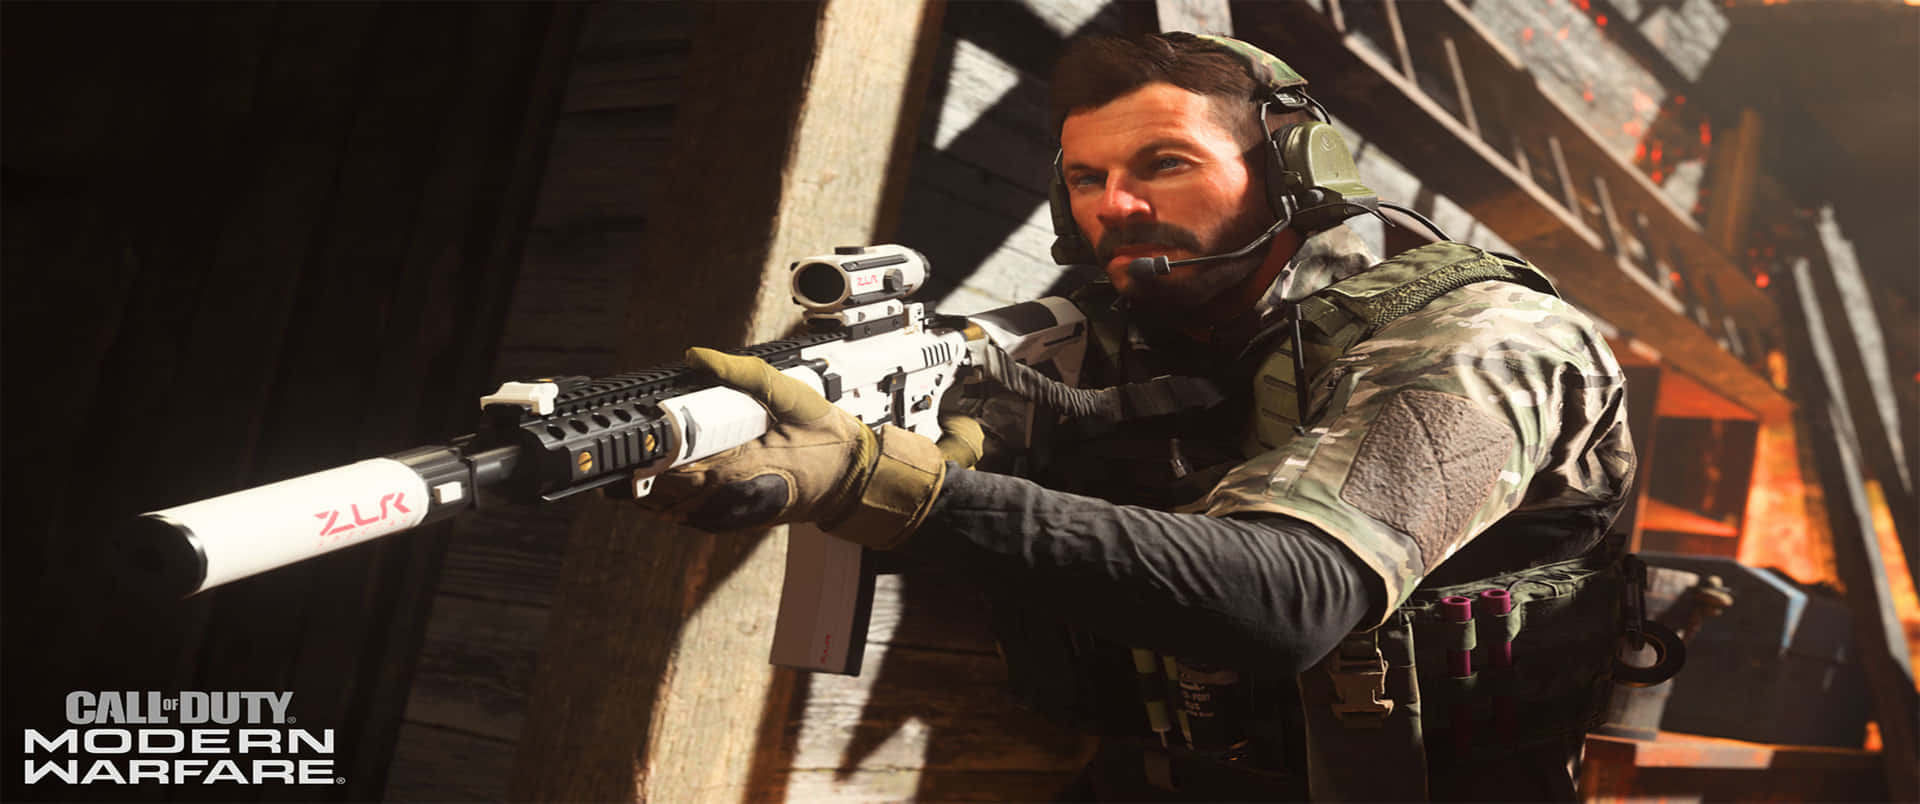 Alexkeller Fondo De Pantalla De Call Of Duty Modern Warfare 3440x1440p.